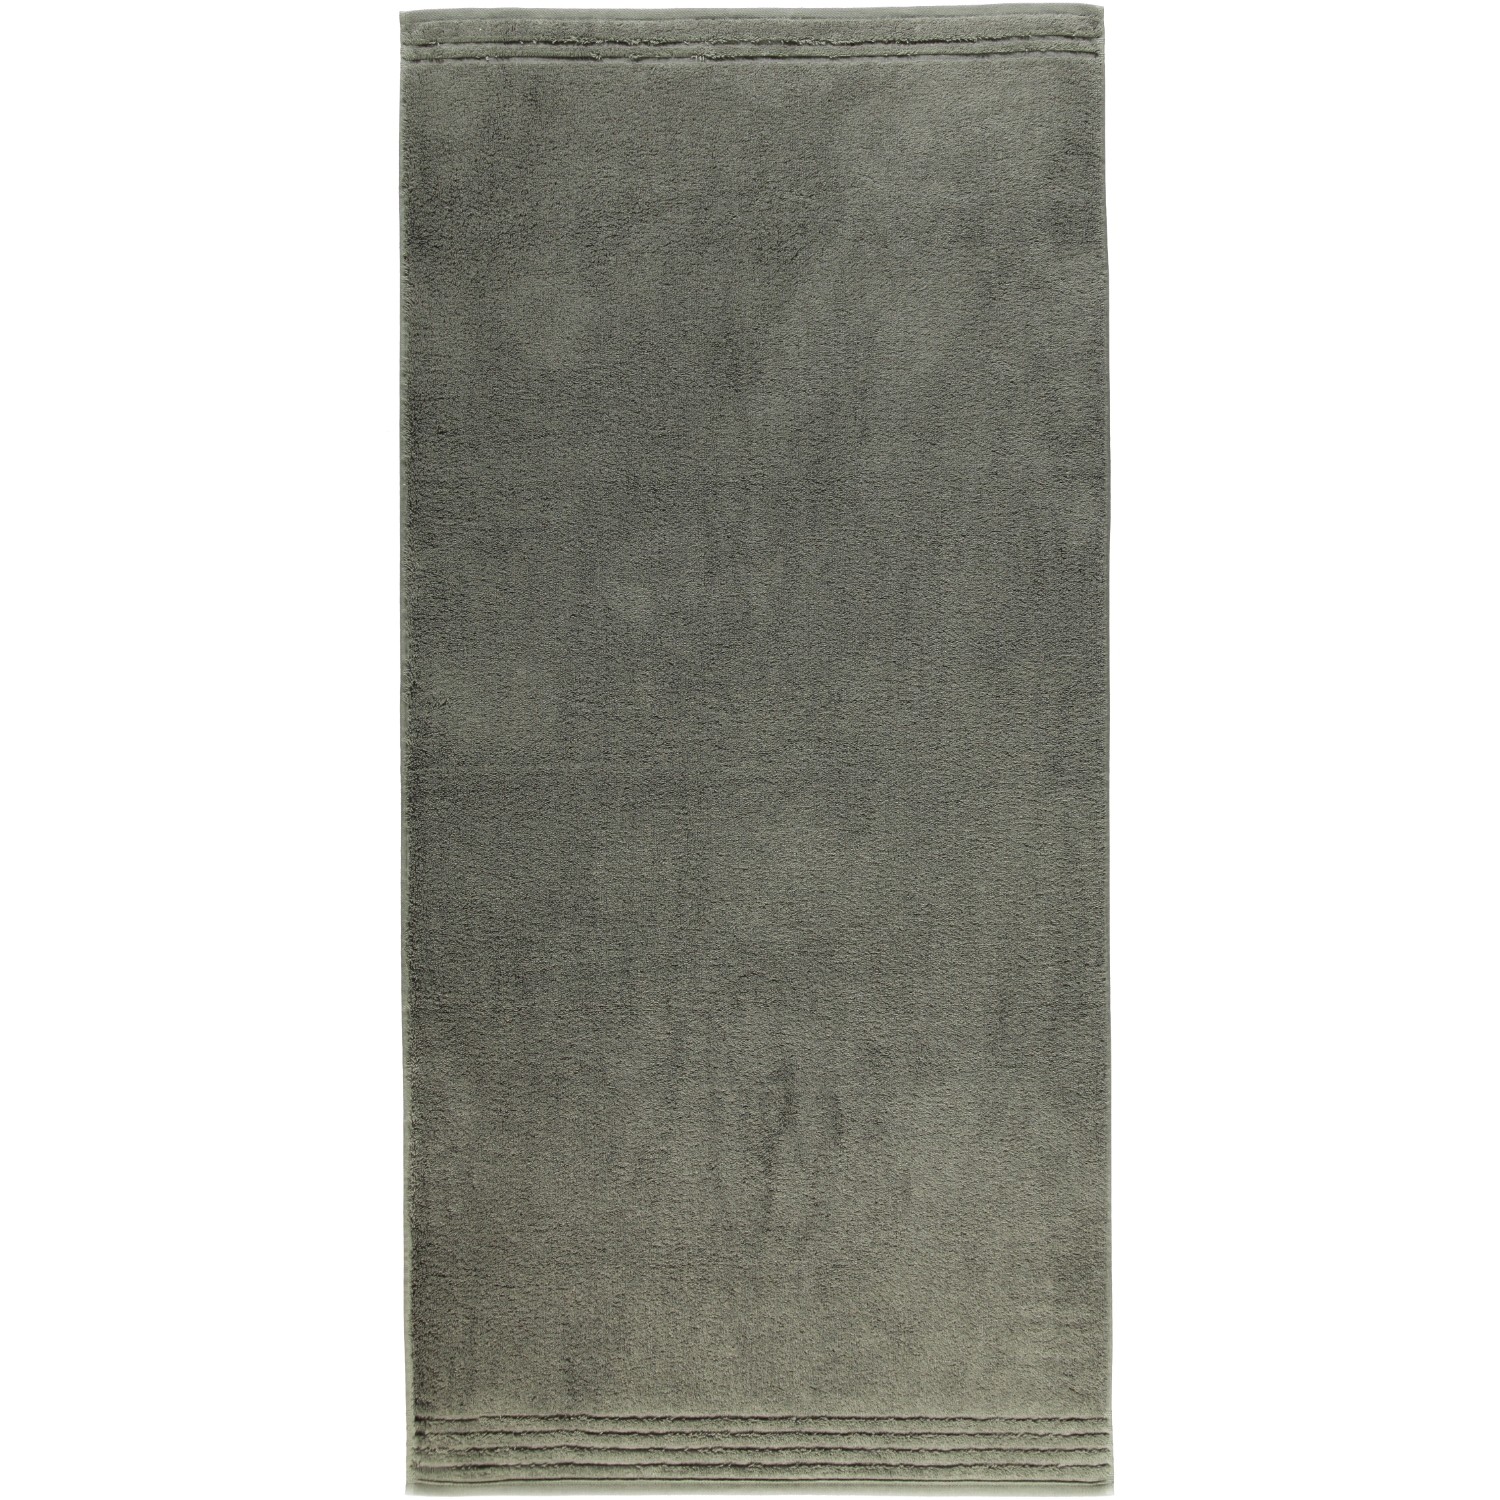 Vossen Vienna Style slate grey Set 3x Handtuch  2x Gästetuch statt 48,85€! 